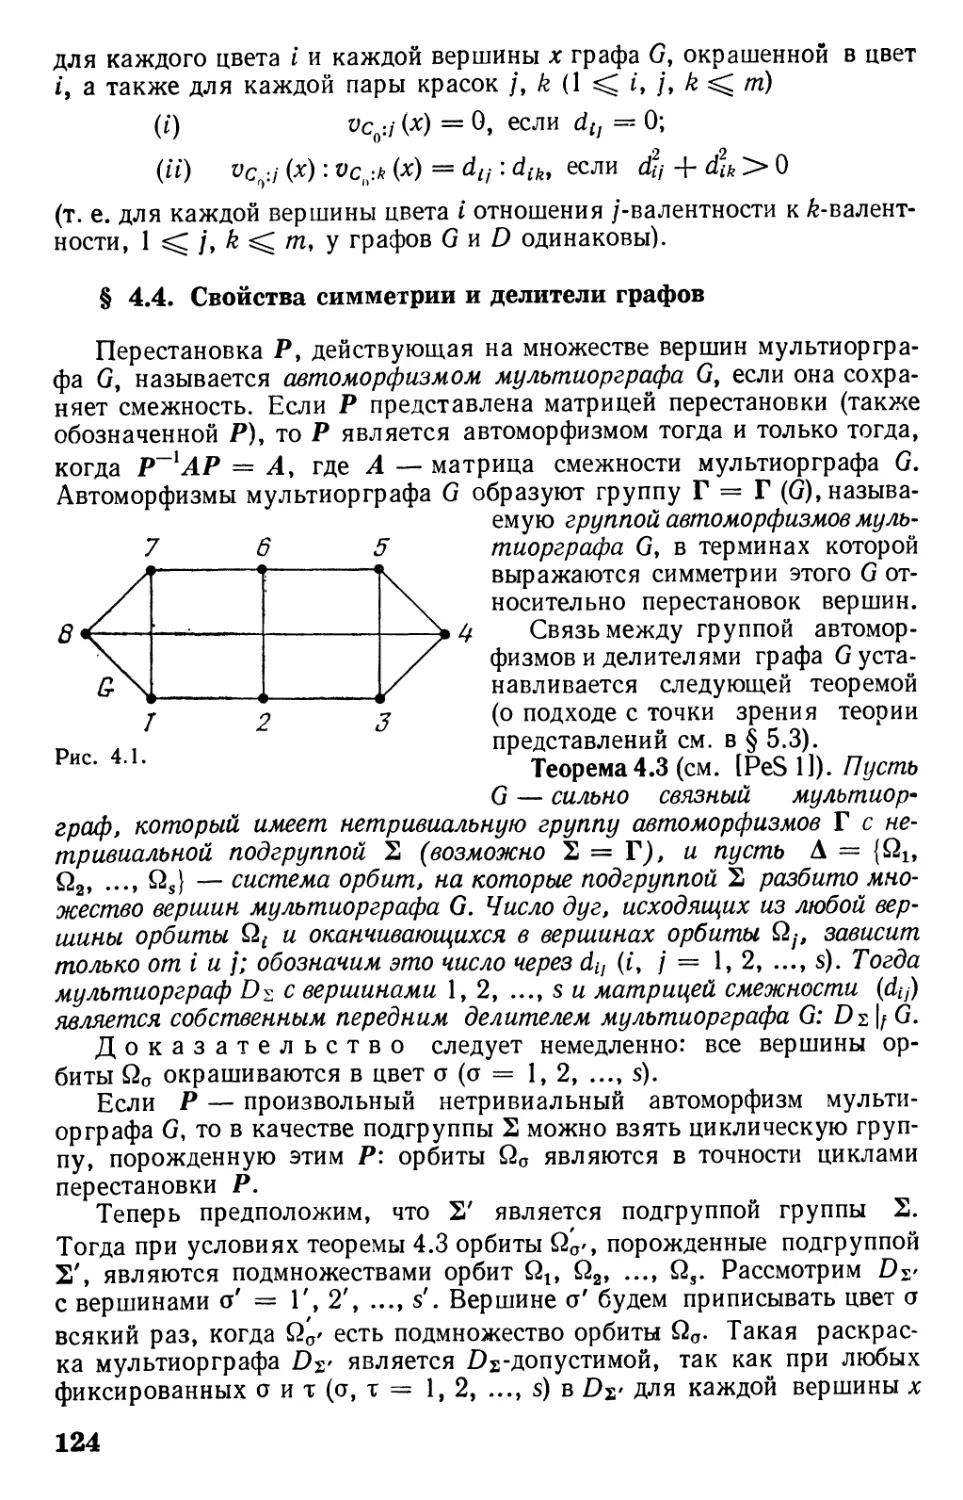 § 4.4. Свойства симметрии и делители графов